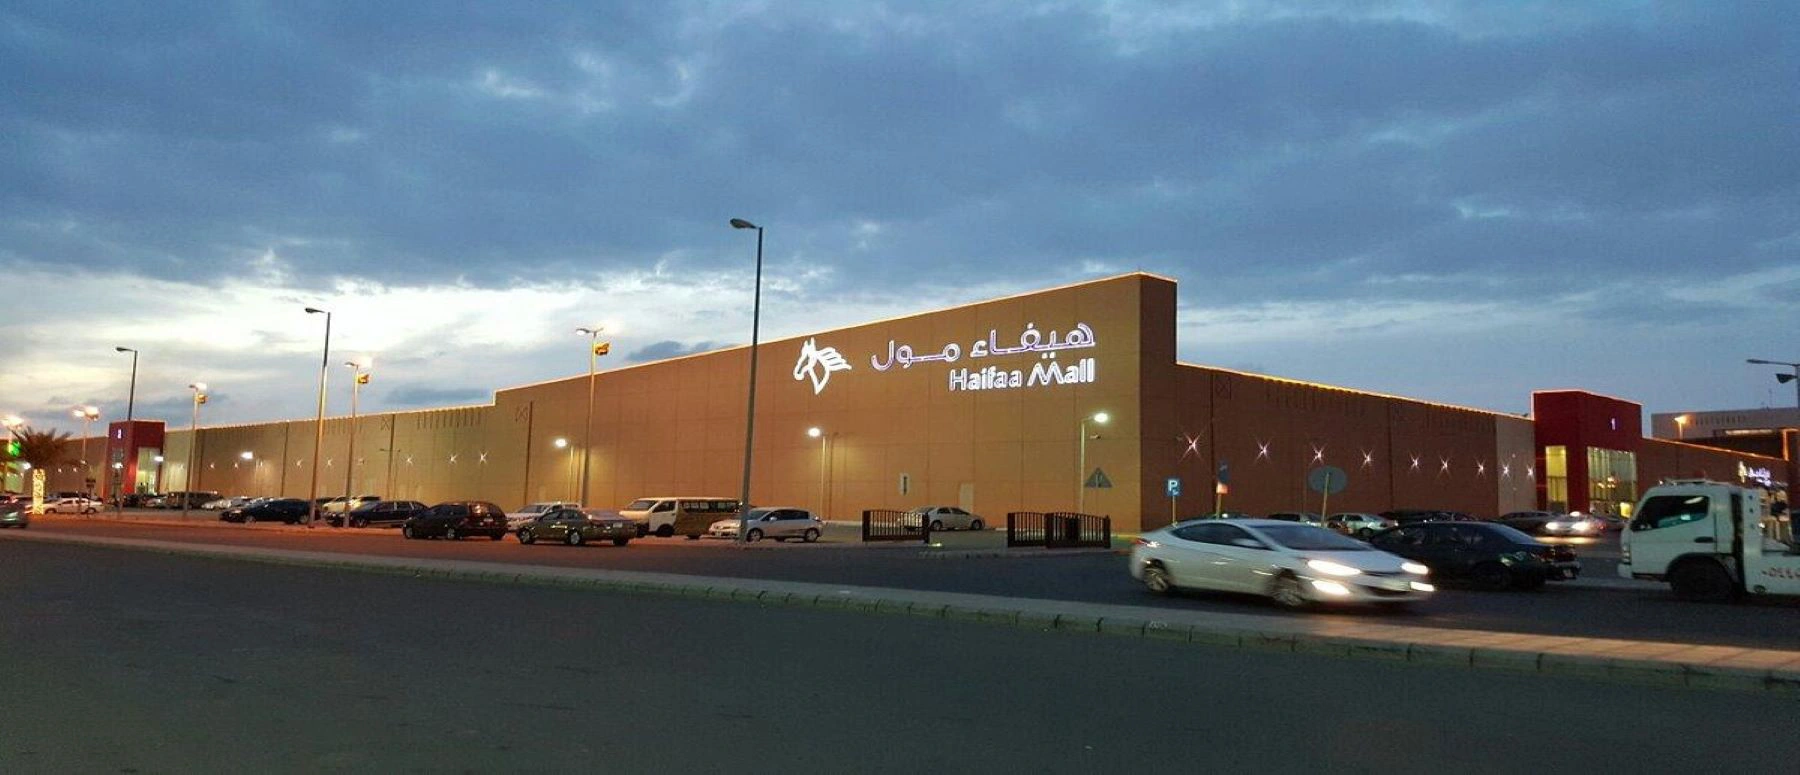 Haifaa Mall